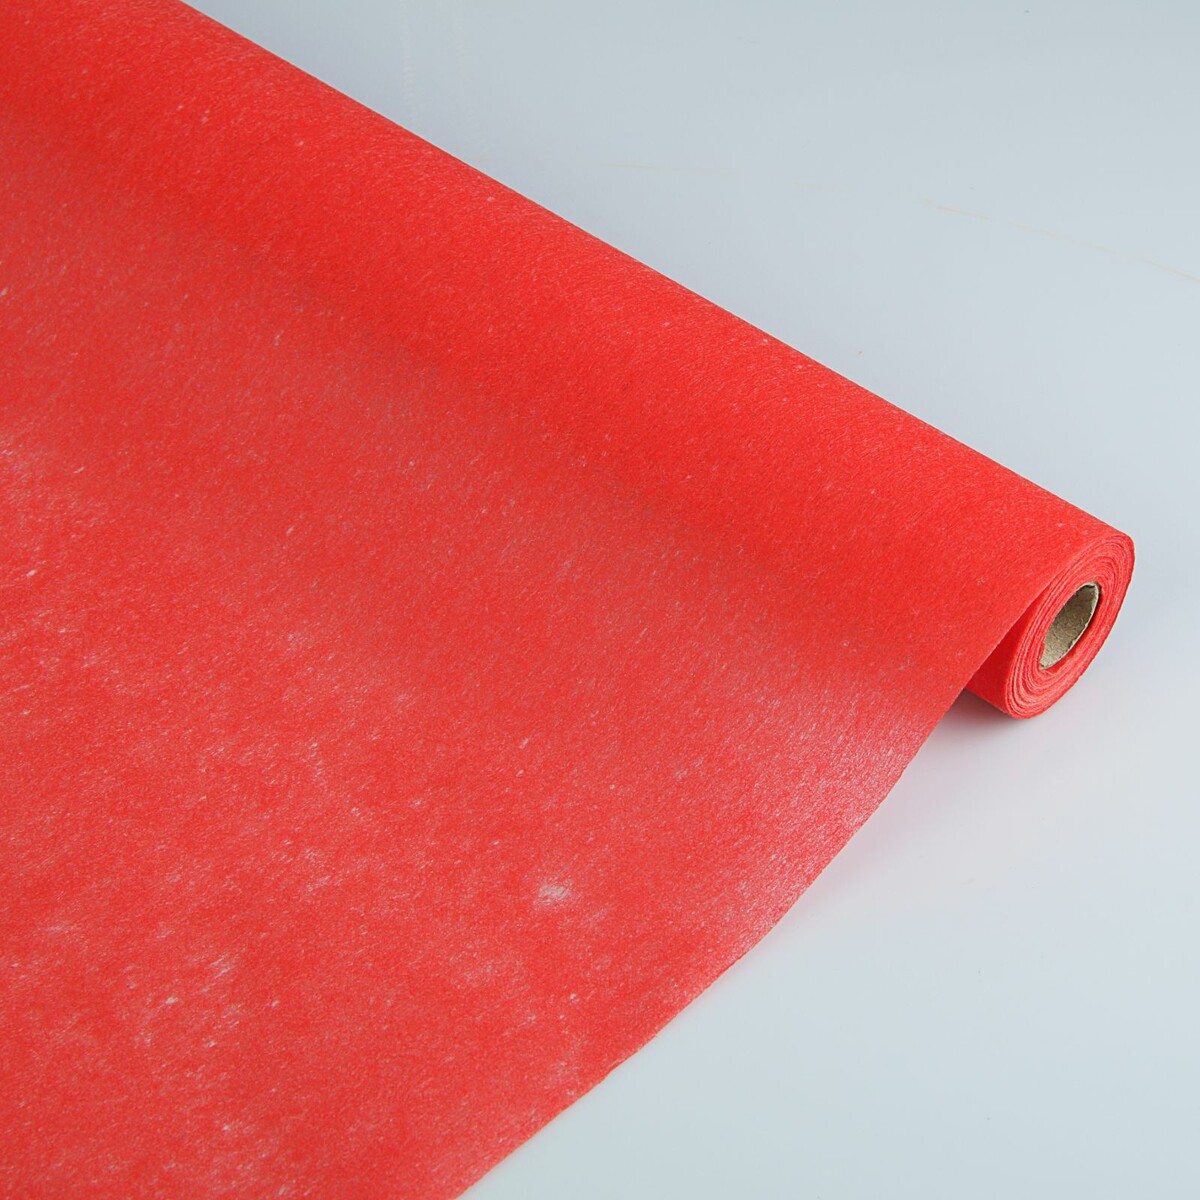 Фетр для упаковок и поделок, однотонный, красный, двусторонний, рулон 1шт., 50 см x 15 м фетр для упаковок и поделок однотонный светло сиреневый двусторонний рулон 1шт 50 см x 15 м